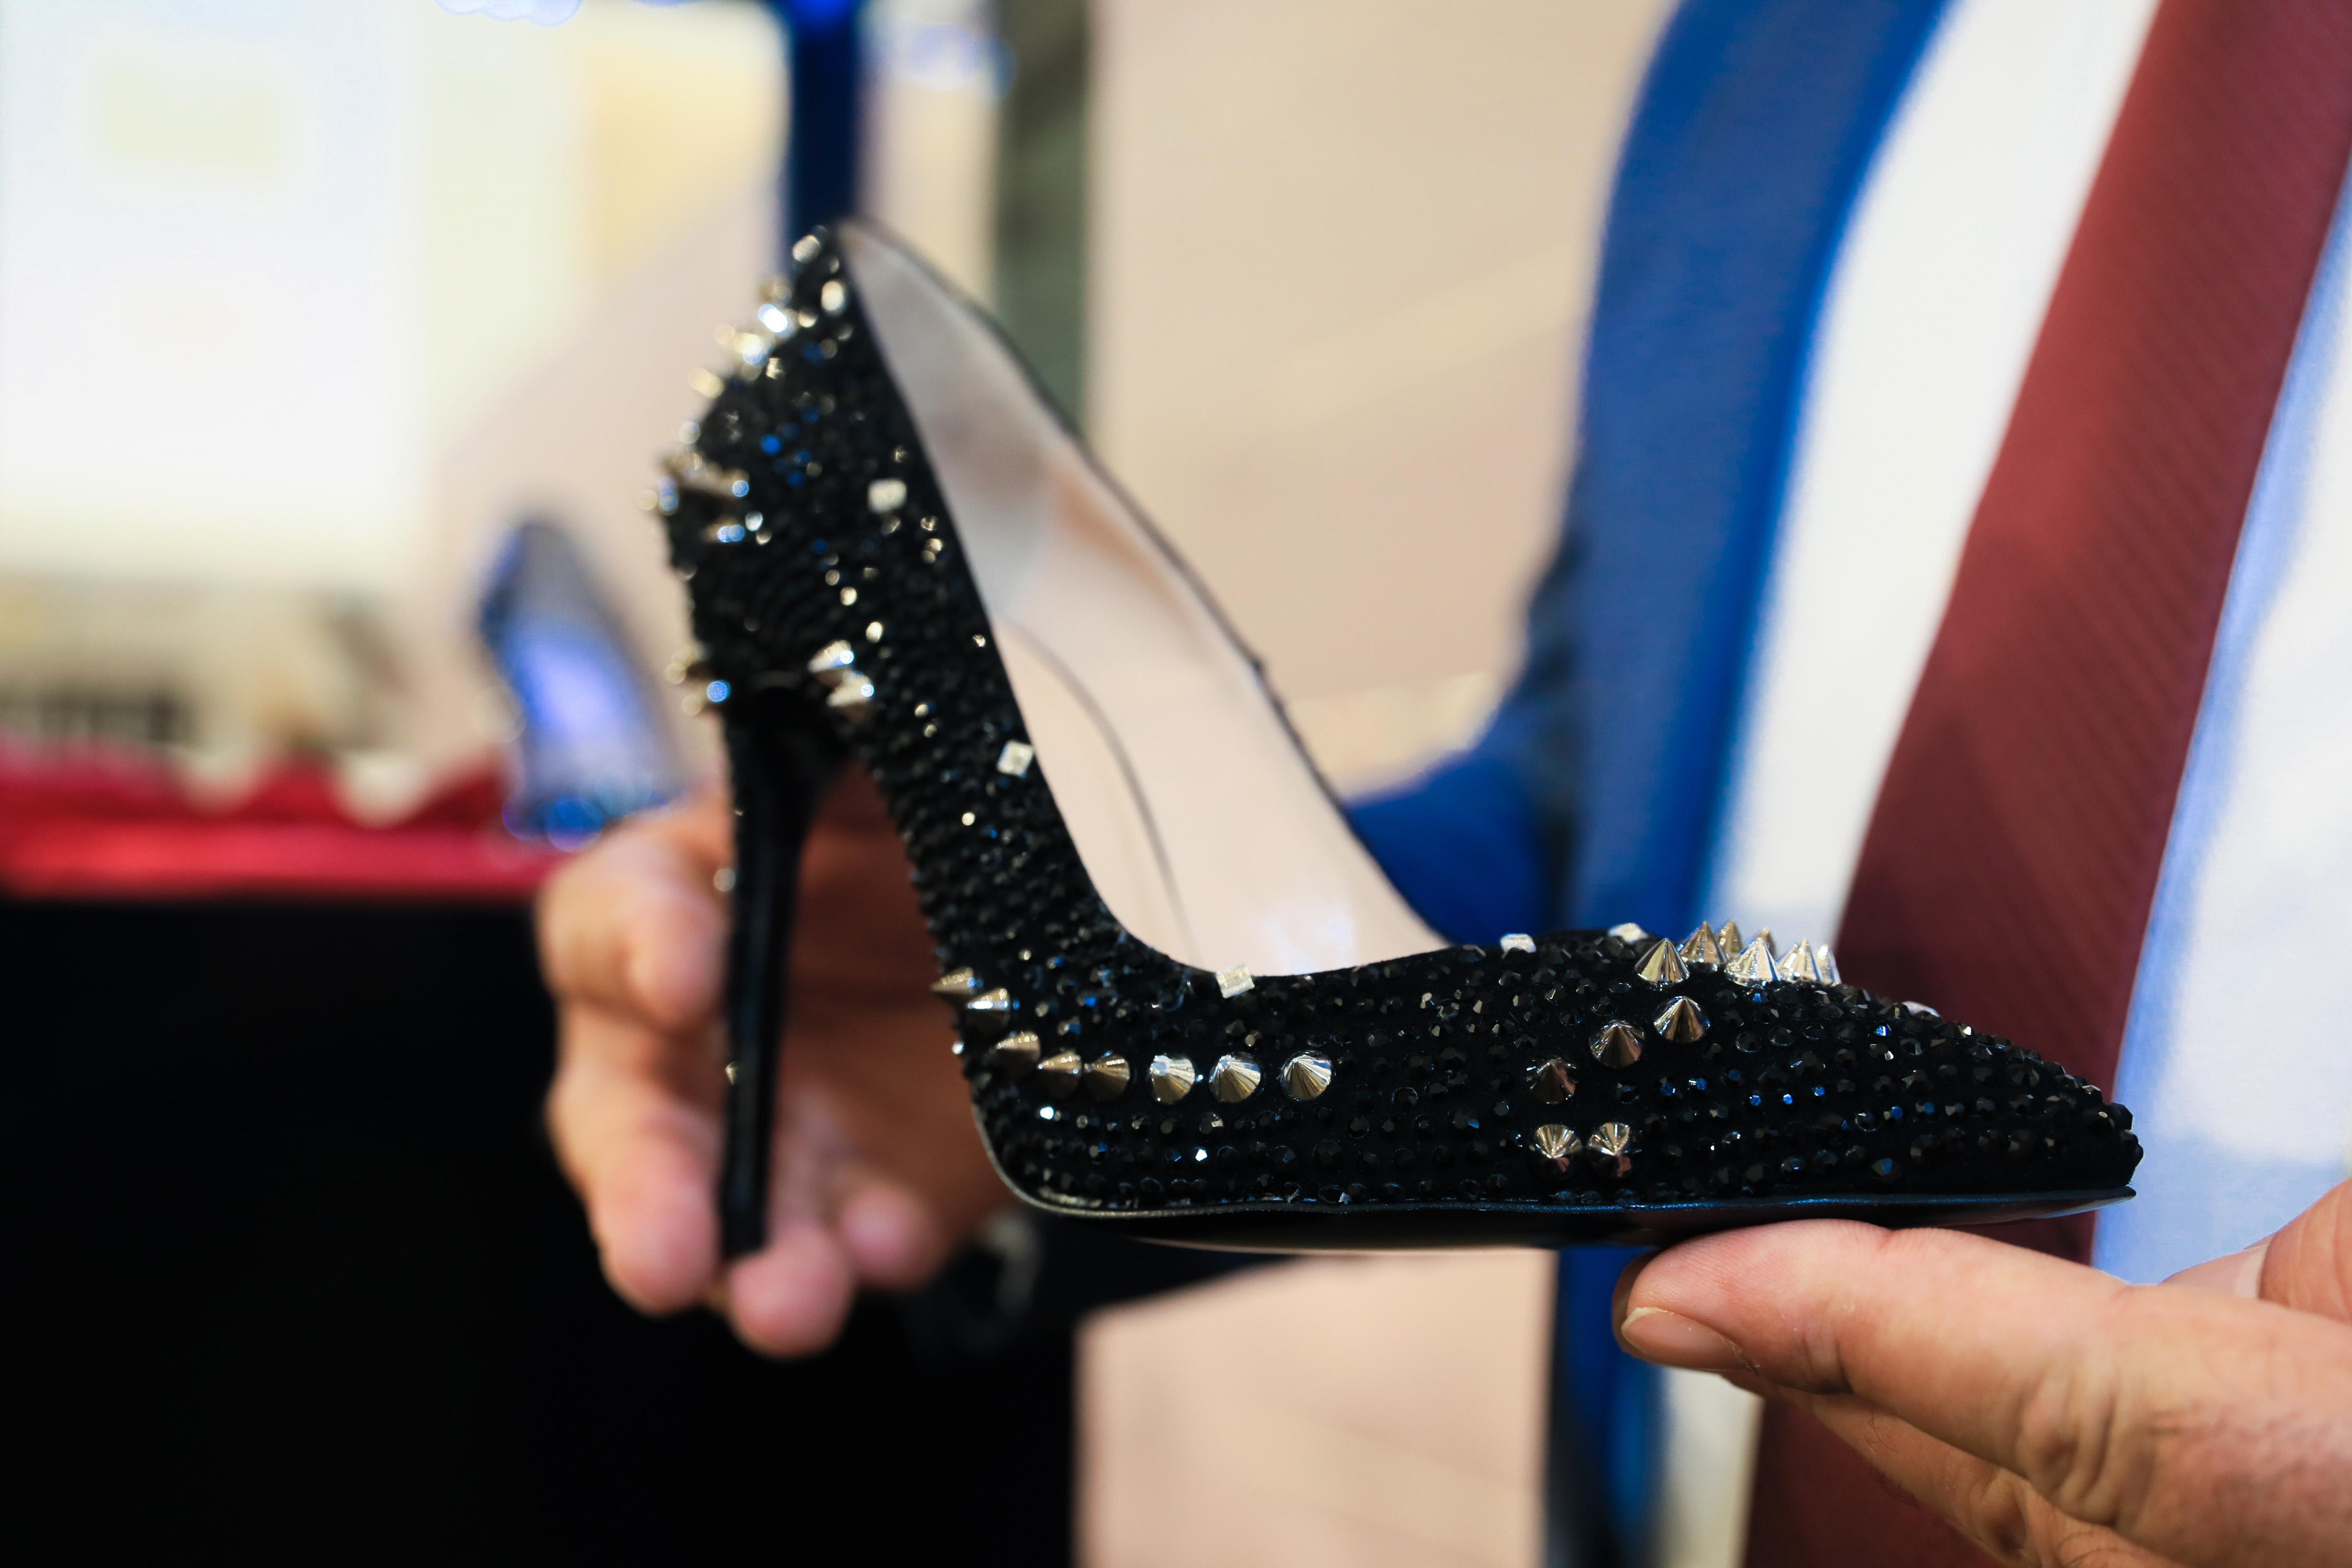 Taş süslemeli kadın ayakkabısı, 104 bin TLye satıldı